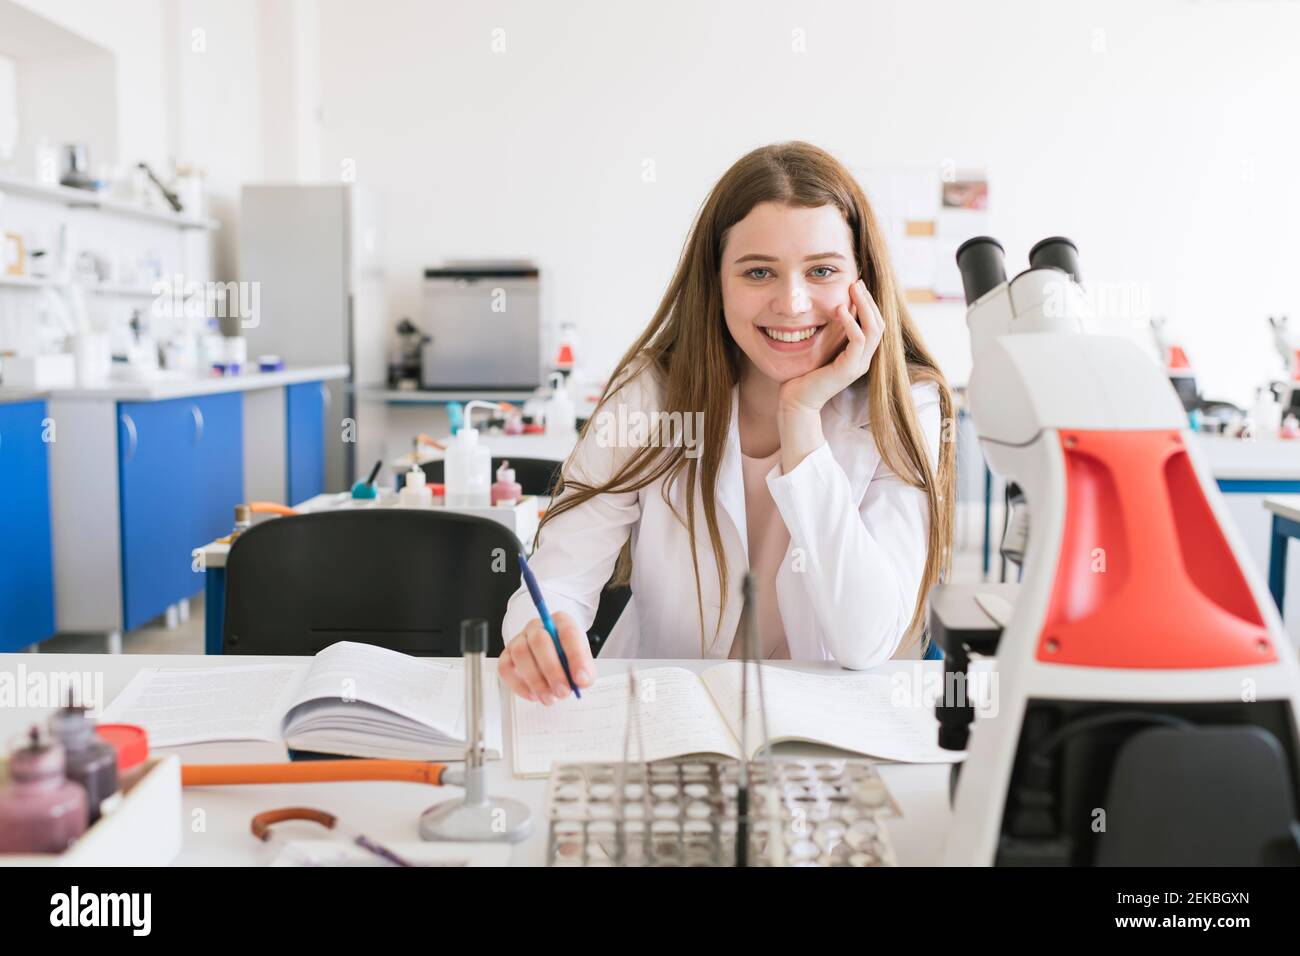 Portrait d'un jeune chercheur en manteau blanc dans une science classe Banque D'Images